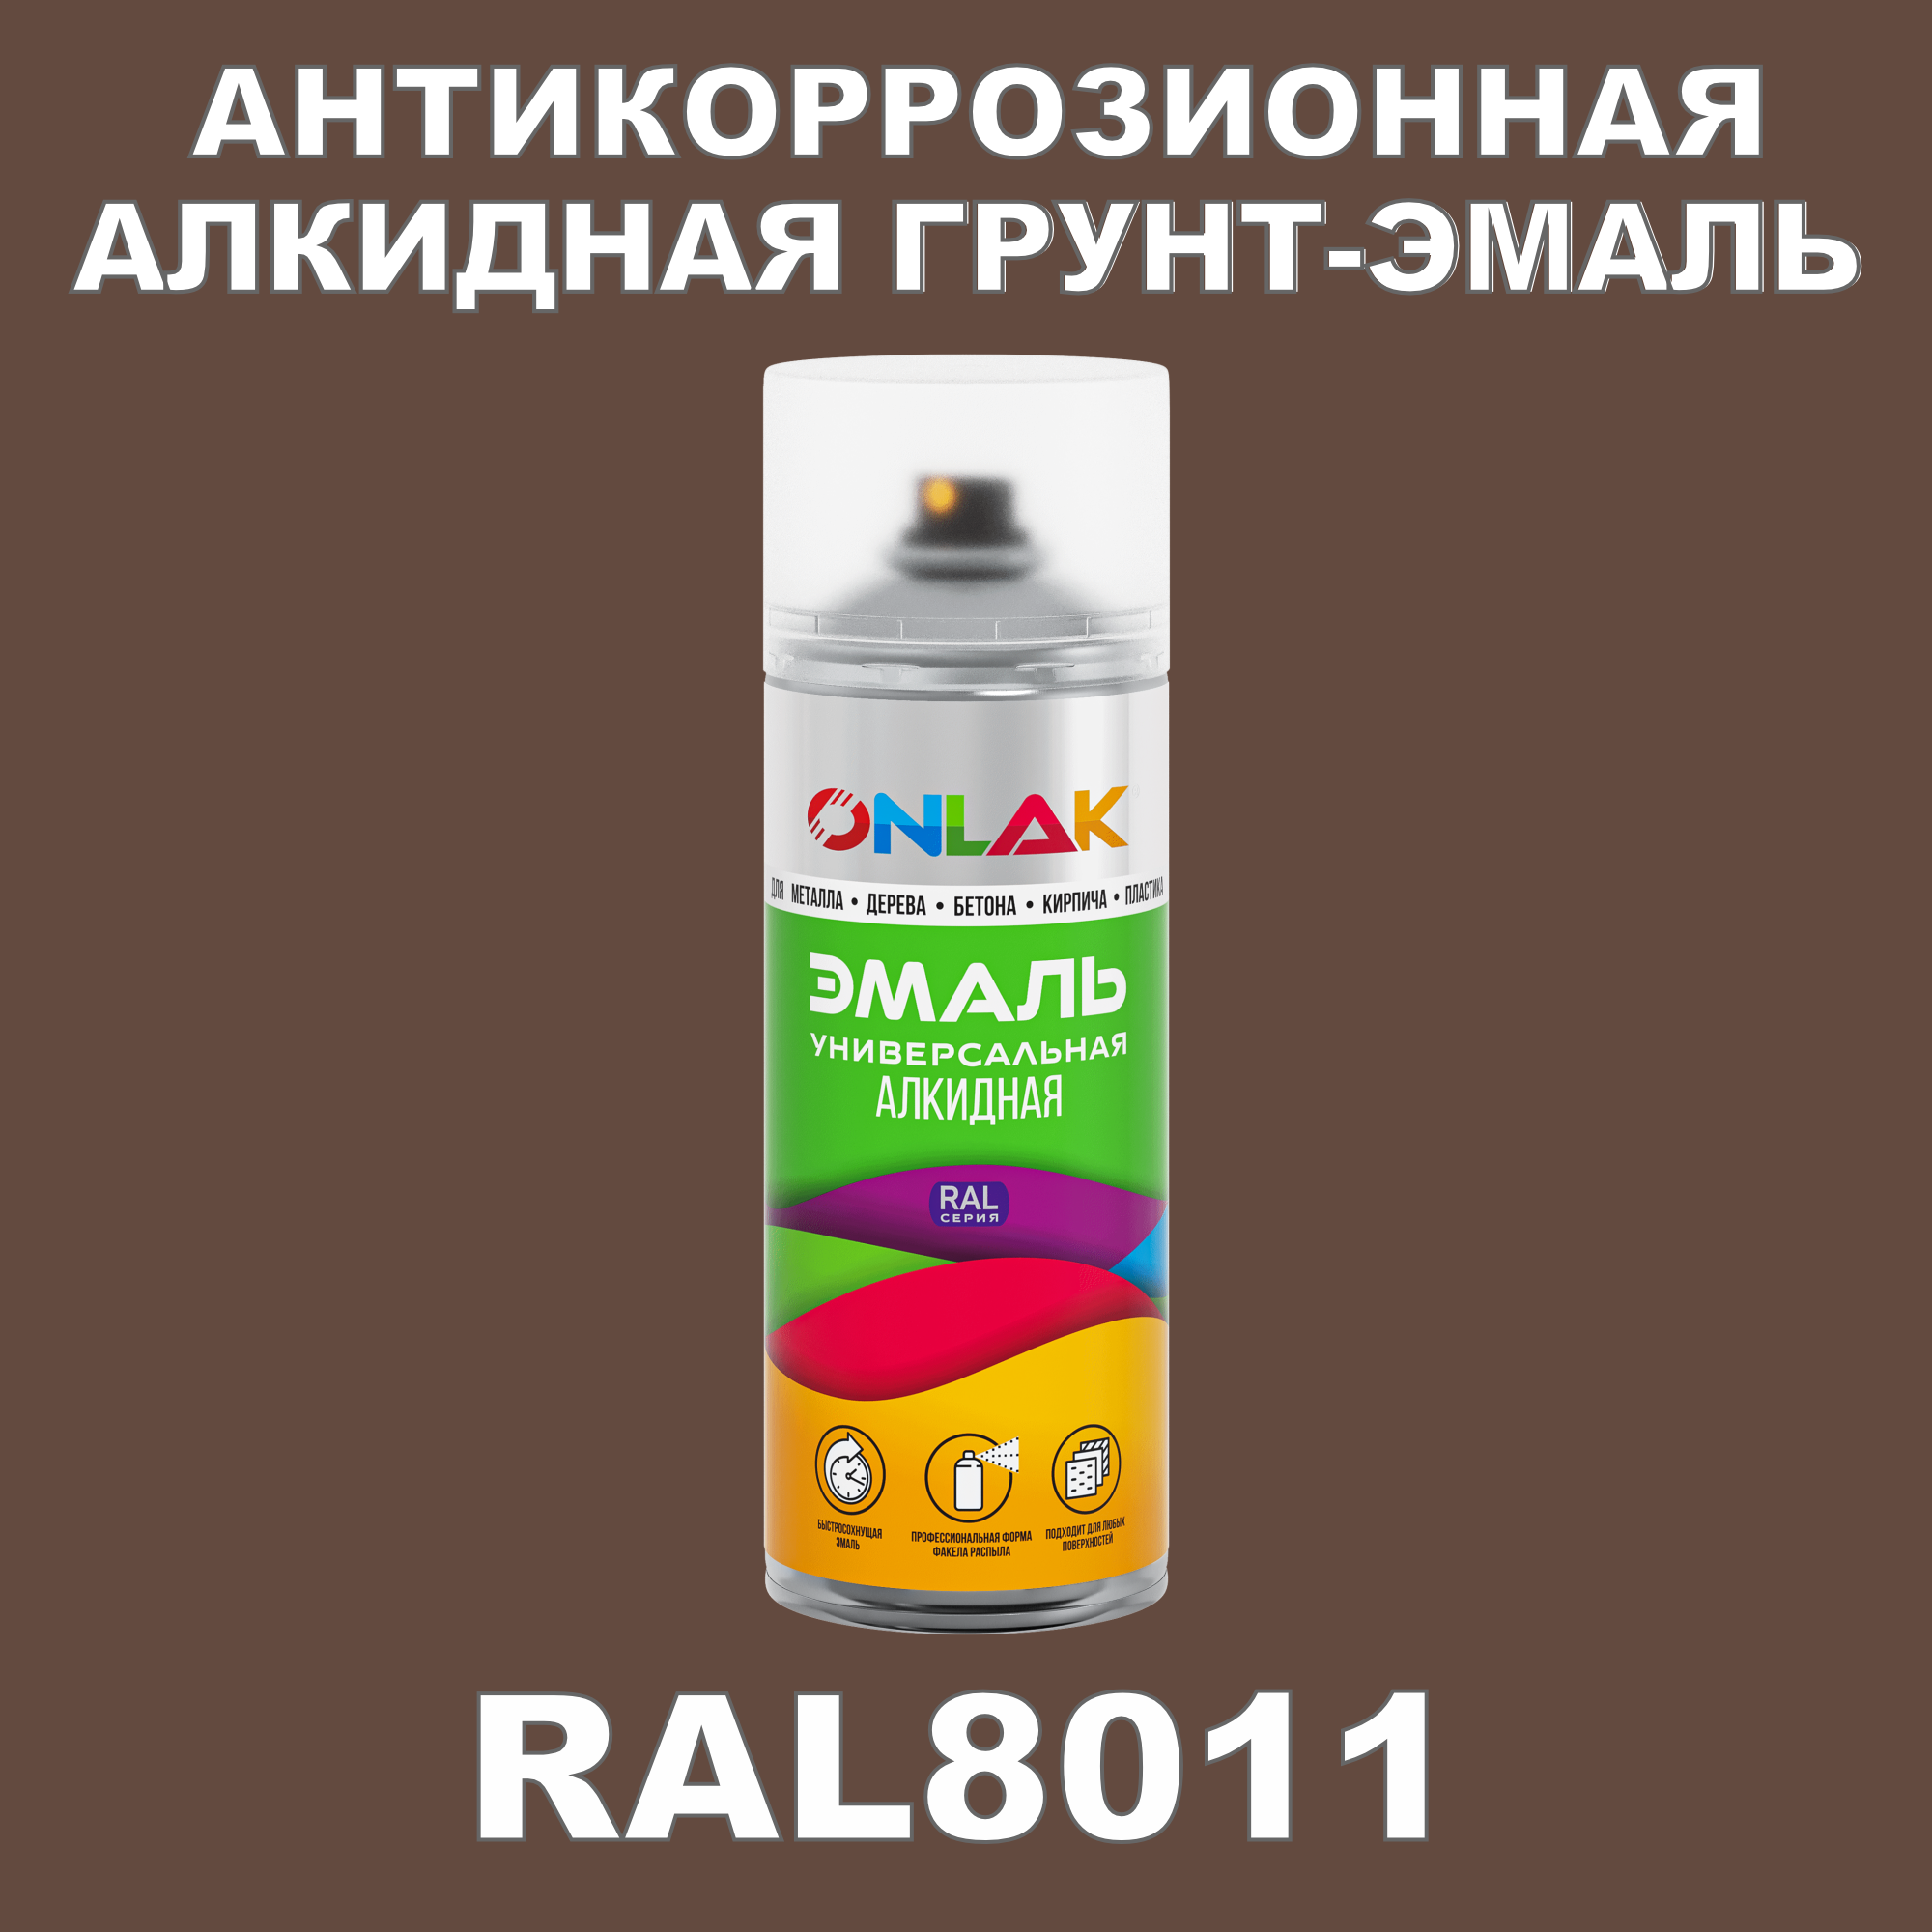 Антикоррозионная грунт-эмаль ONLAK RAL8011 матовая для металла и защиты от ржавчины